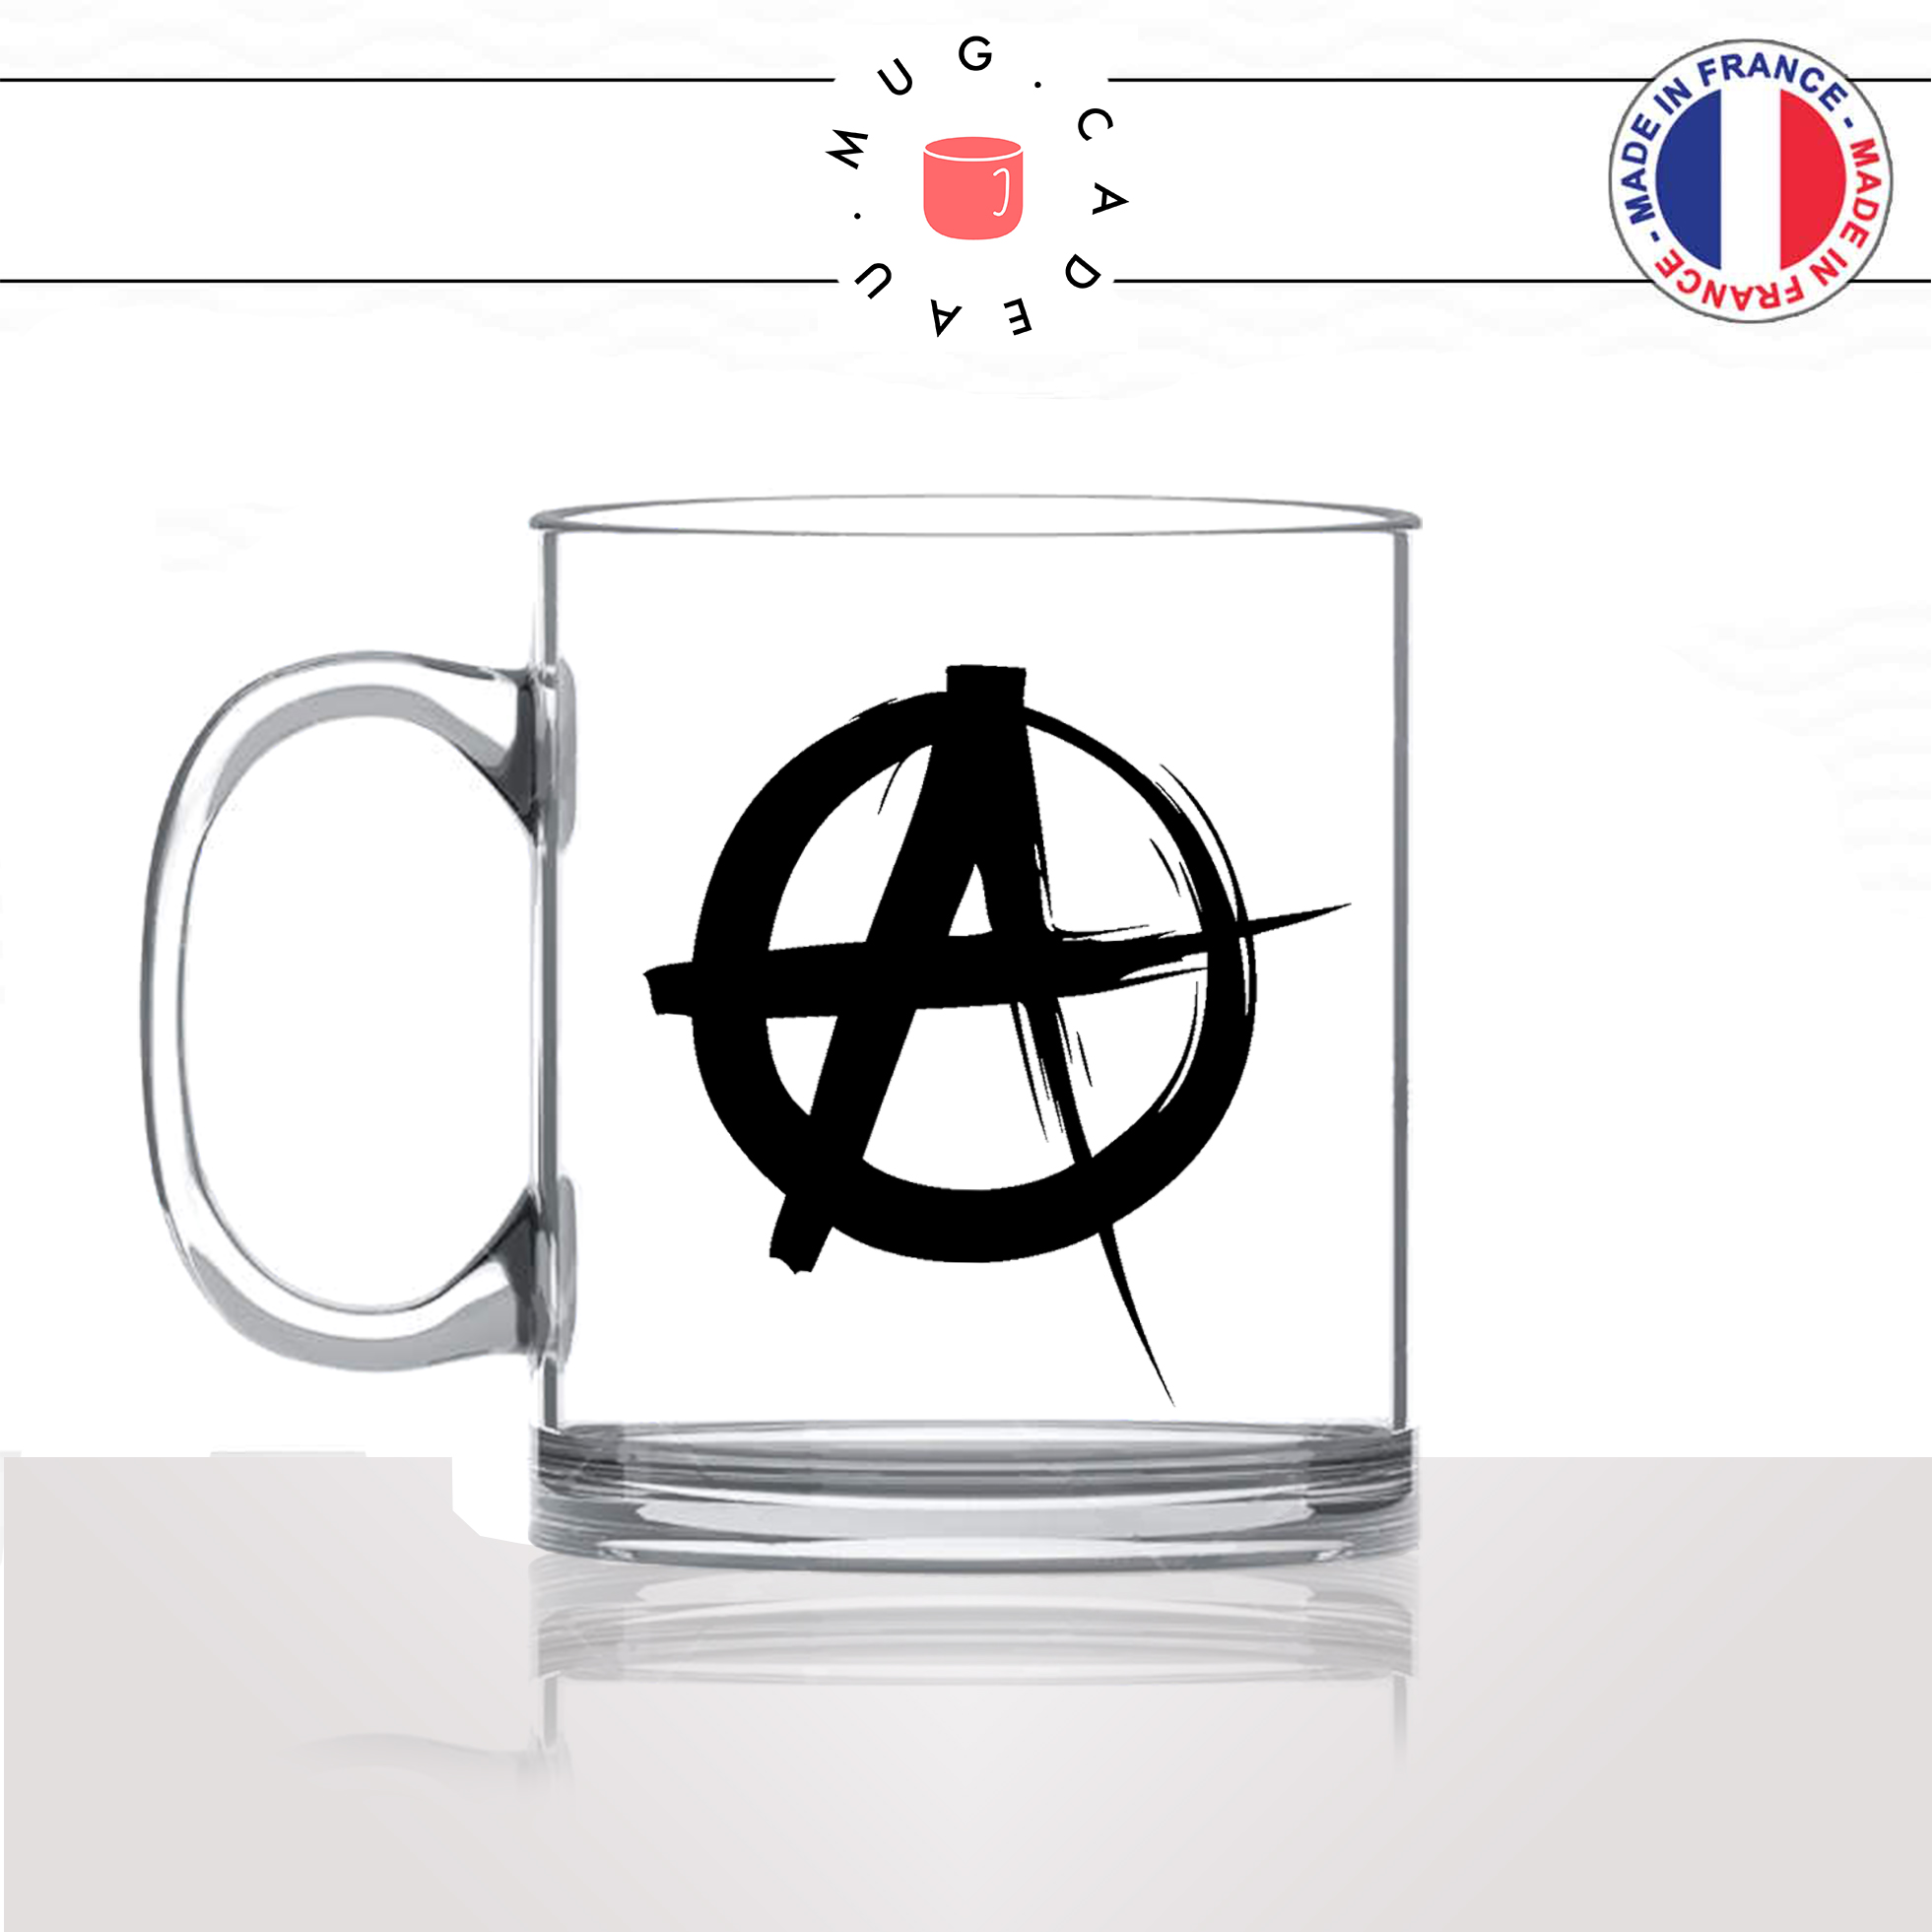 mug-tasse-en-verre-transparent-idée-cadeau-personnalisé-anarchie-anarchiste-anarchy-a-politique-anti-fa-offrir-original-fun